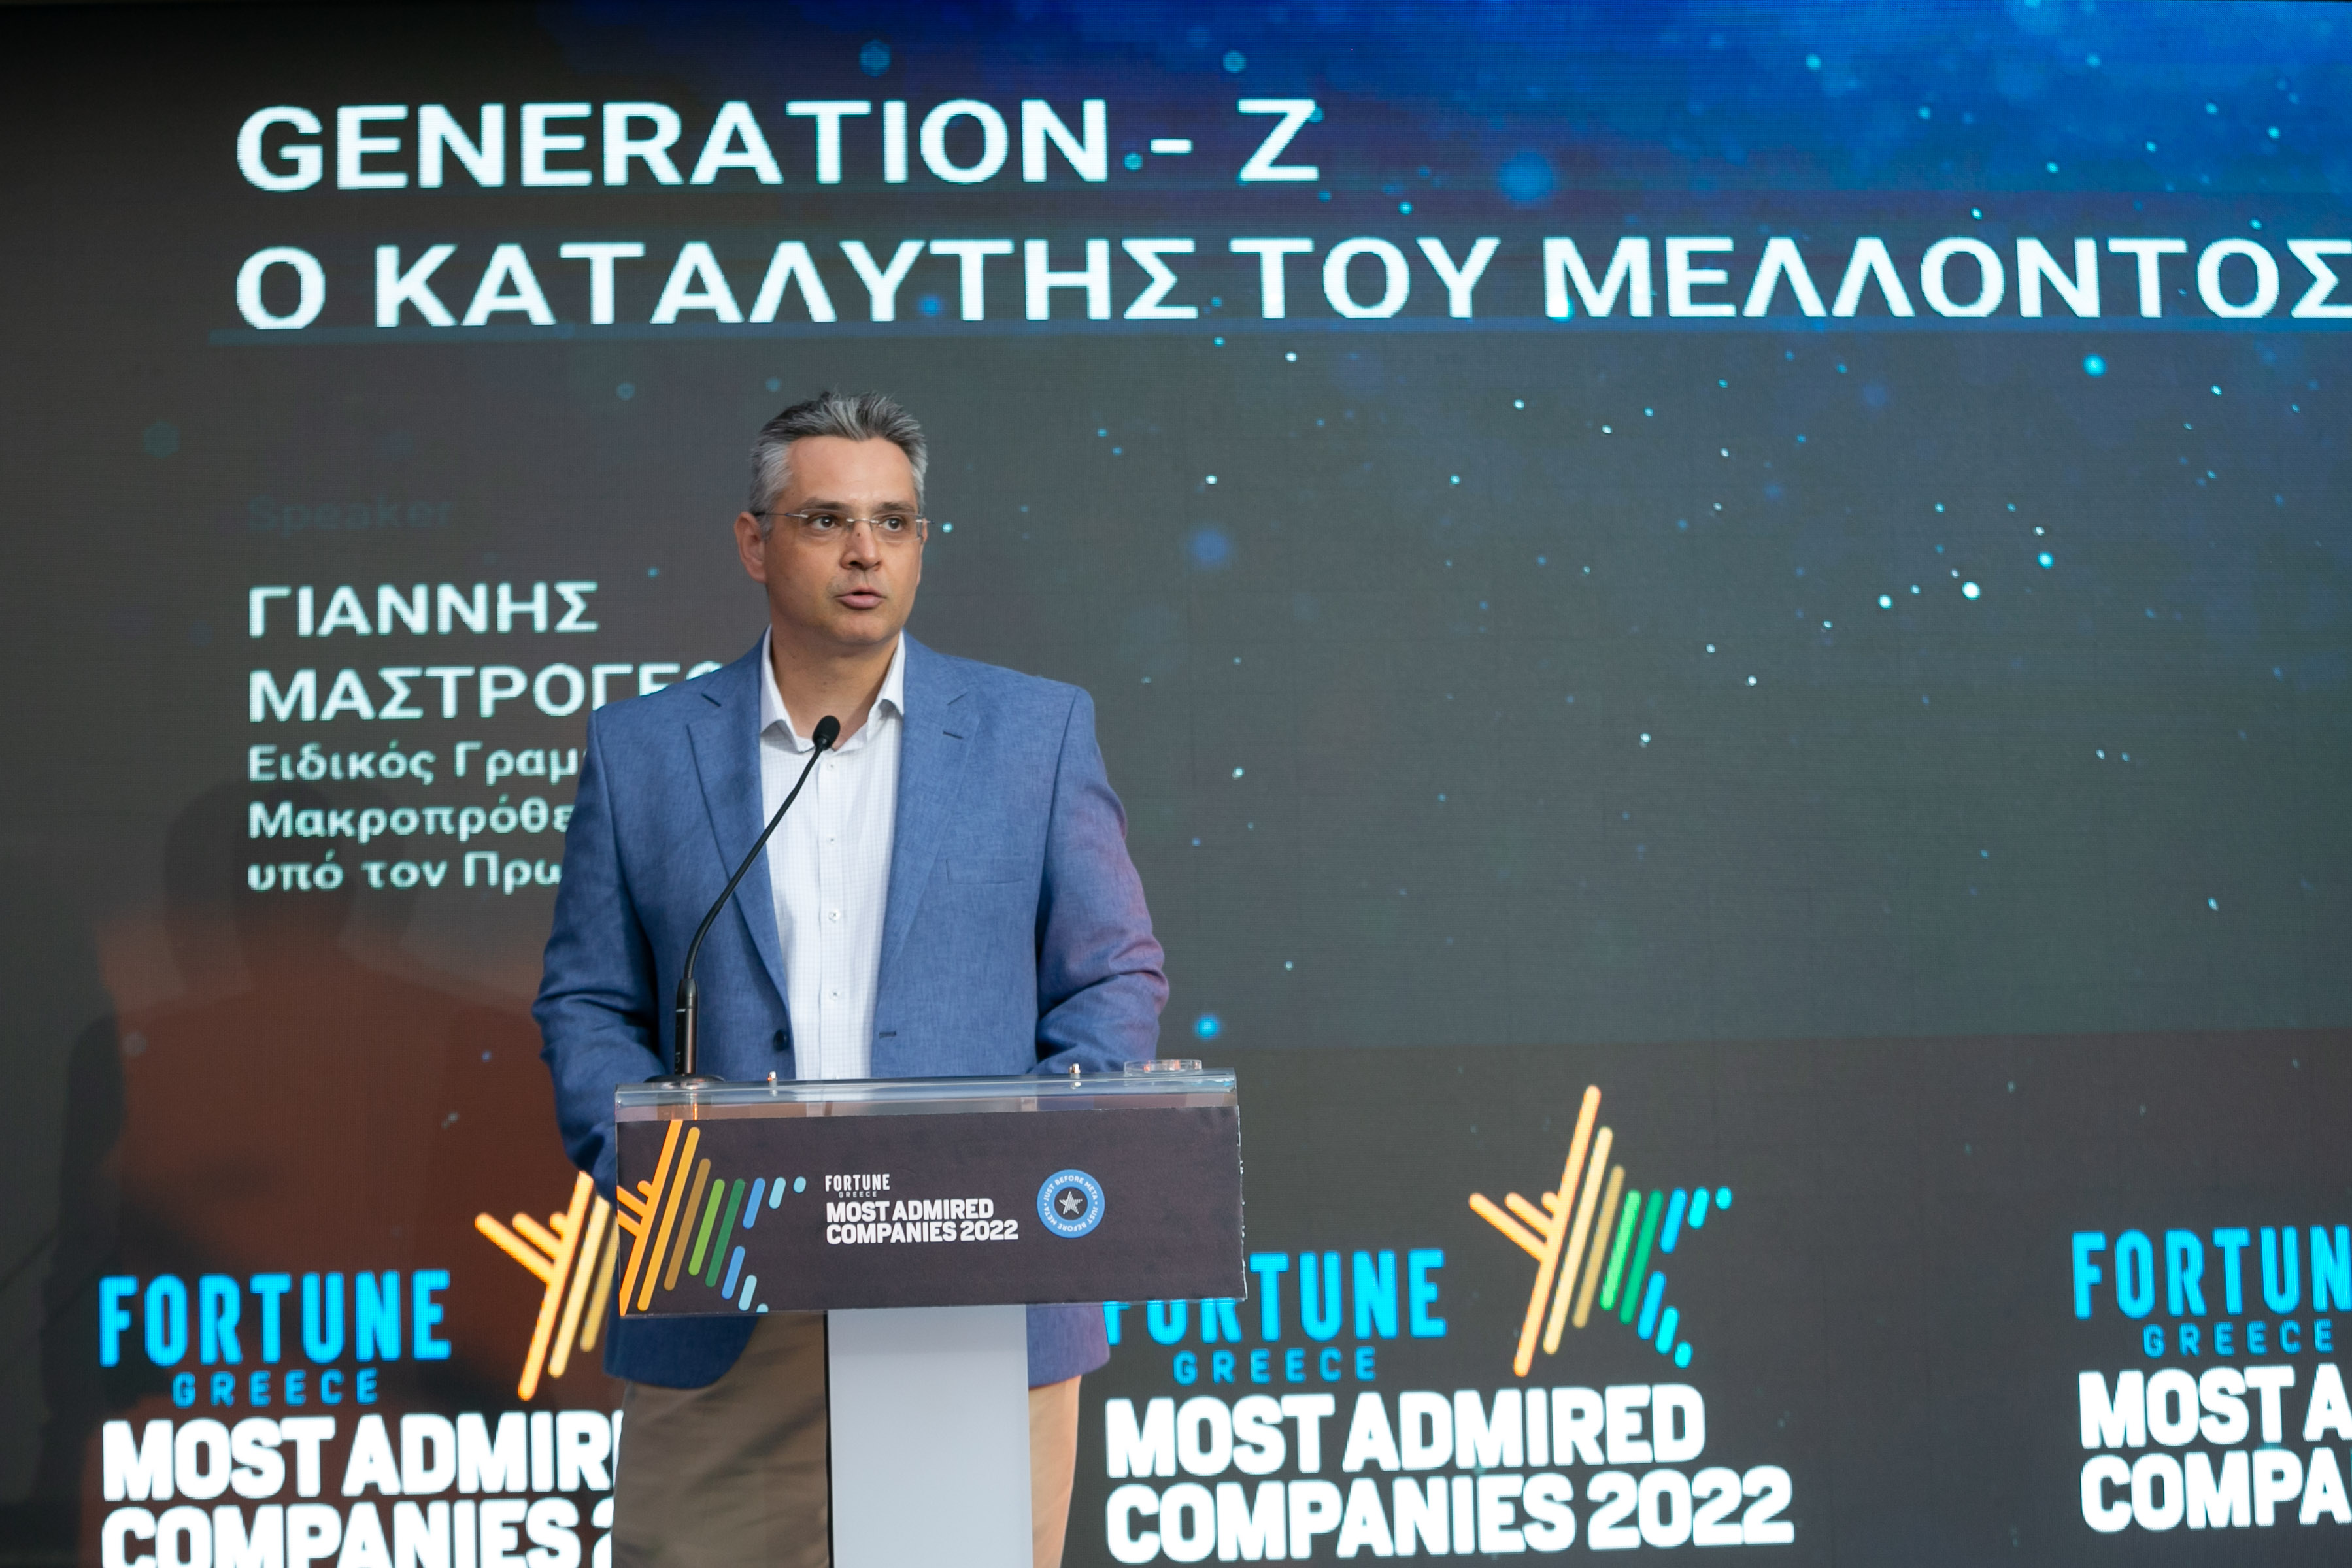 Γιάννης Μαστρογεωργίου στις “Most Admired Companies 2022” του Fortune Greece: Η Generation Z, καταλύτης αλλαγών στην αγορά εργασίας την επόμενη δεκαετία